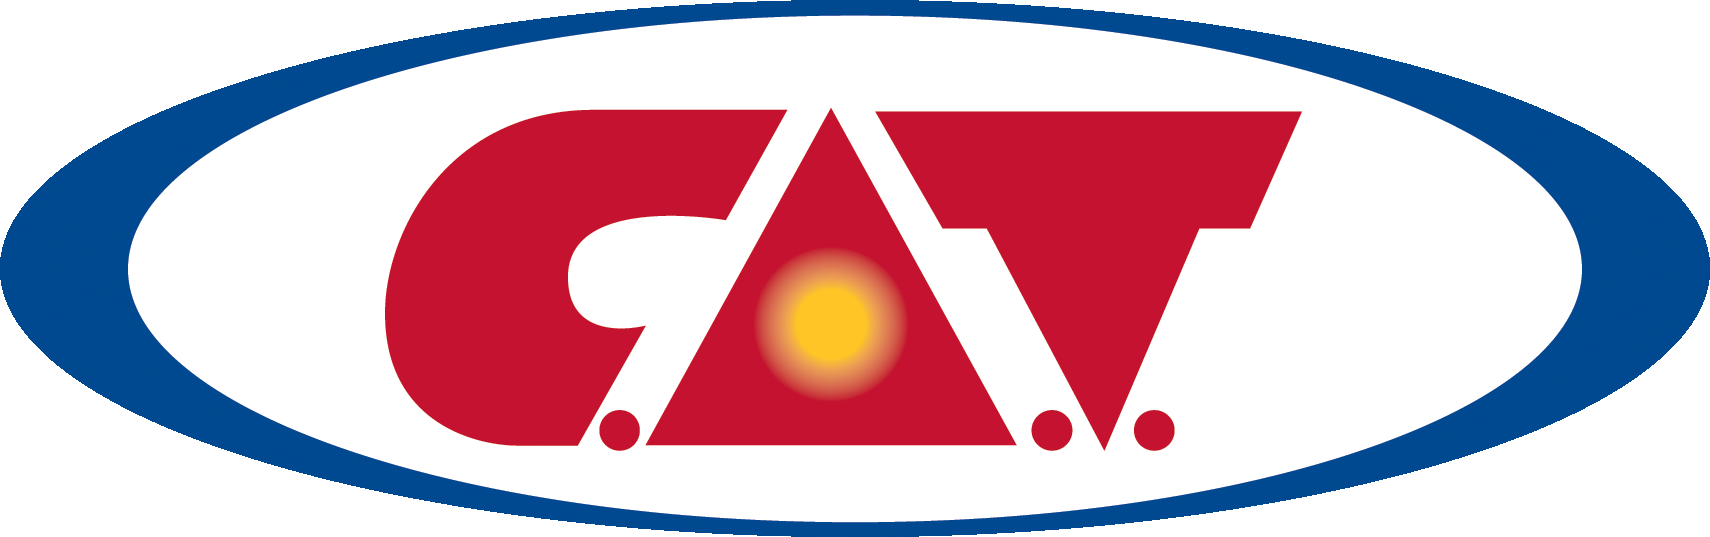 C.A.T. logo